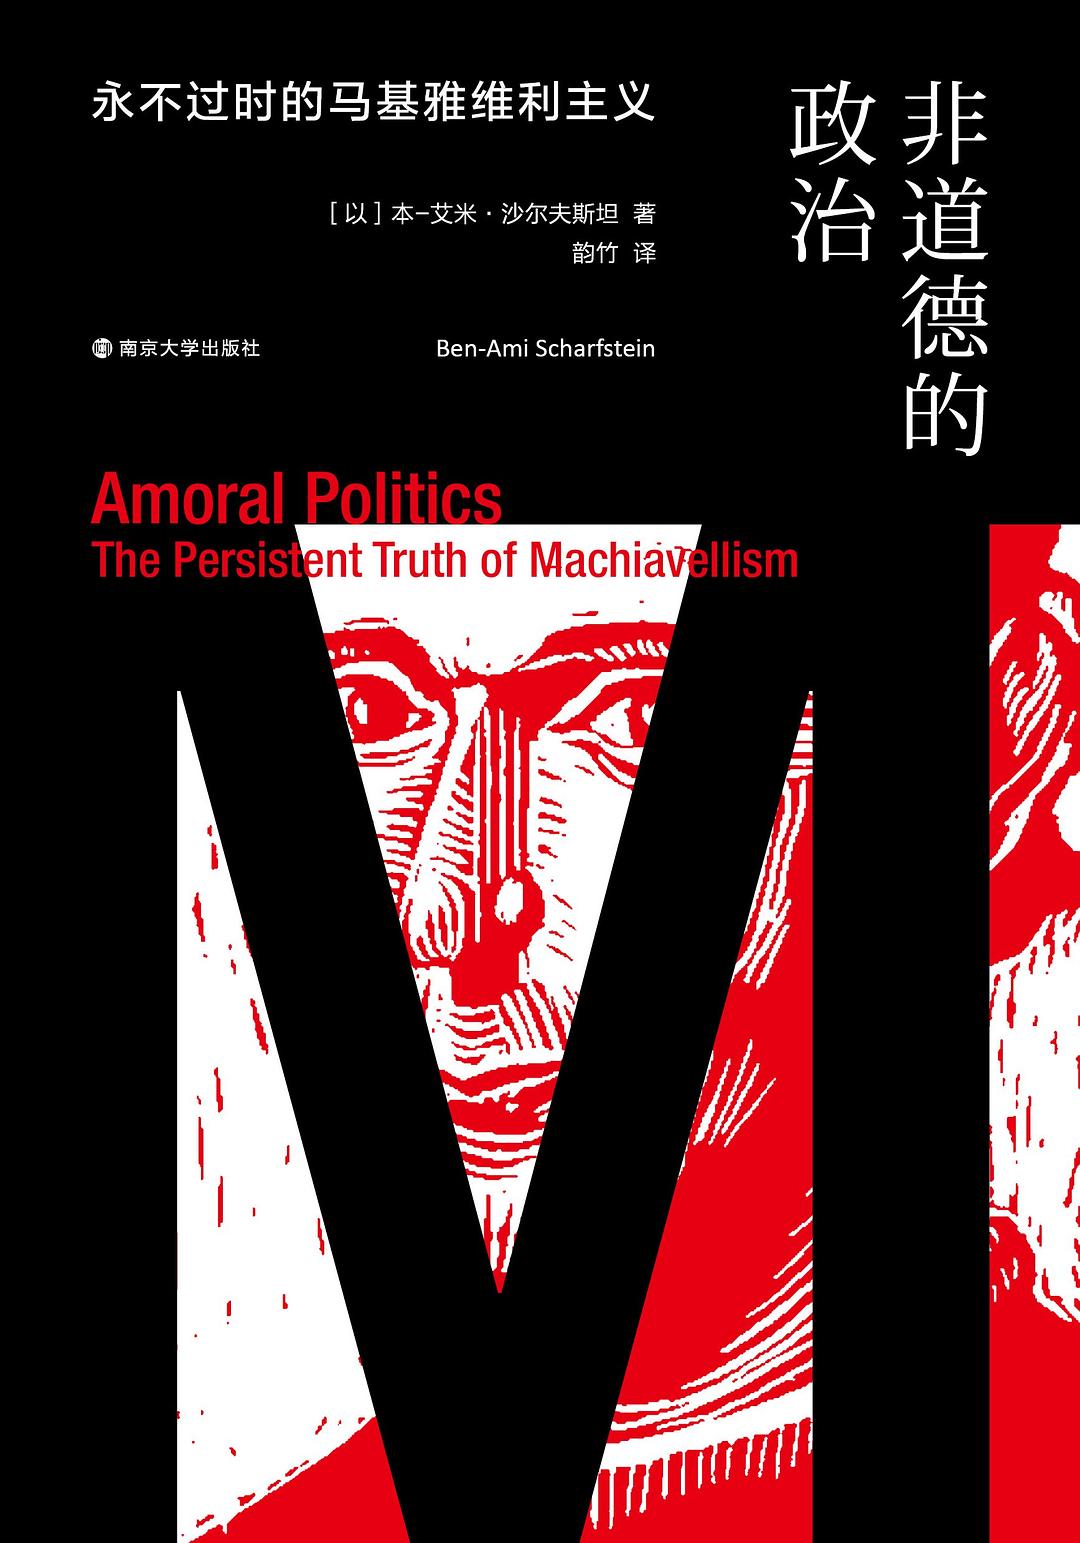 李汉松评《非道德的政治》︱中、西、印的道德政治_上海书评_澎湃新闻